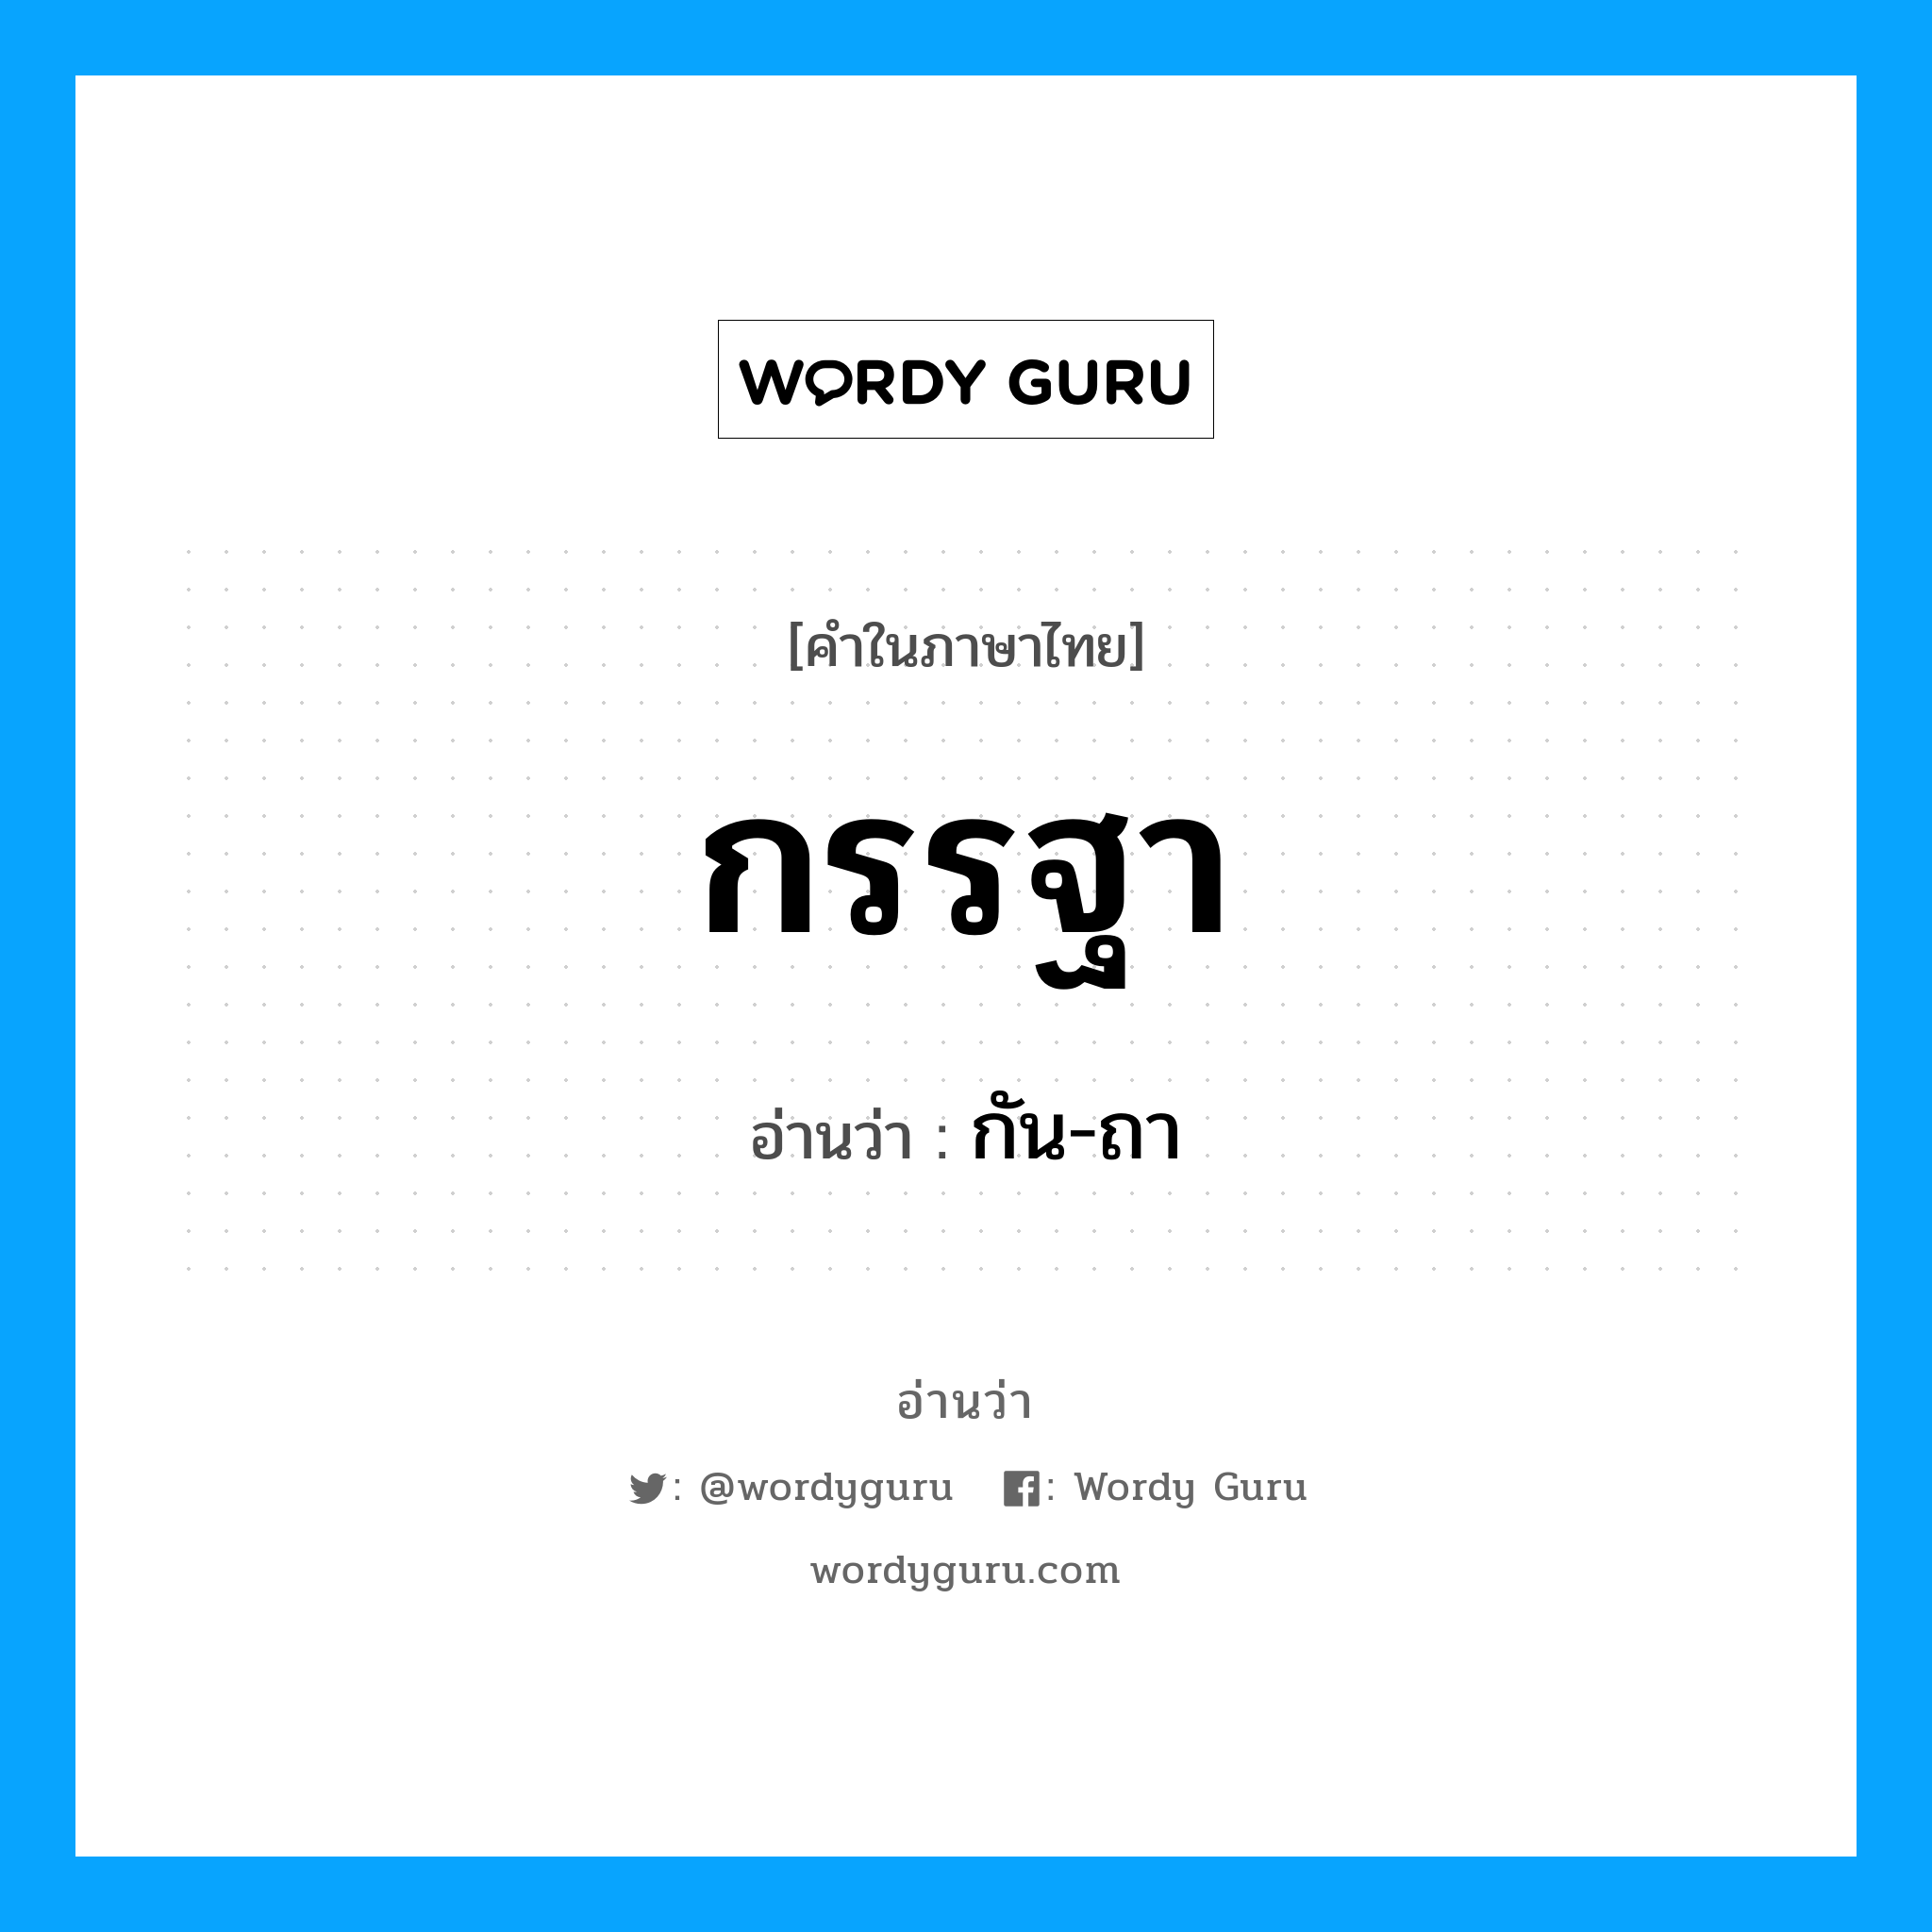 กัน-ถา เป็นคำอ่านของคำไหน?, คำในภาษาไทย กัน-ถา อ่านว่า กรรฐา